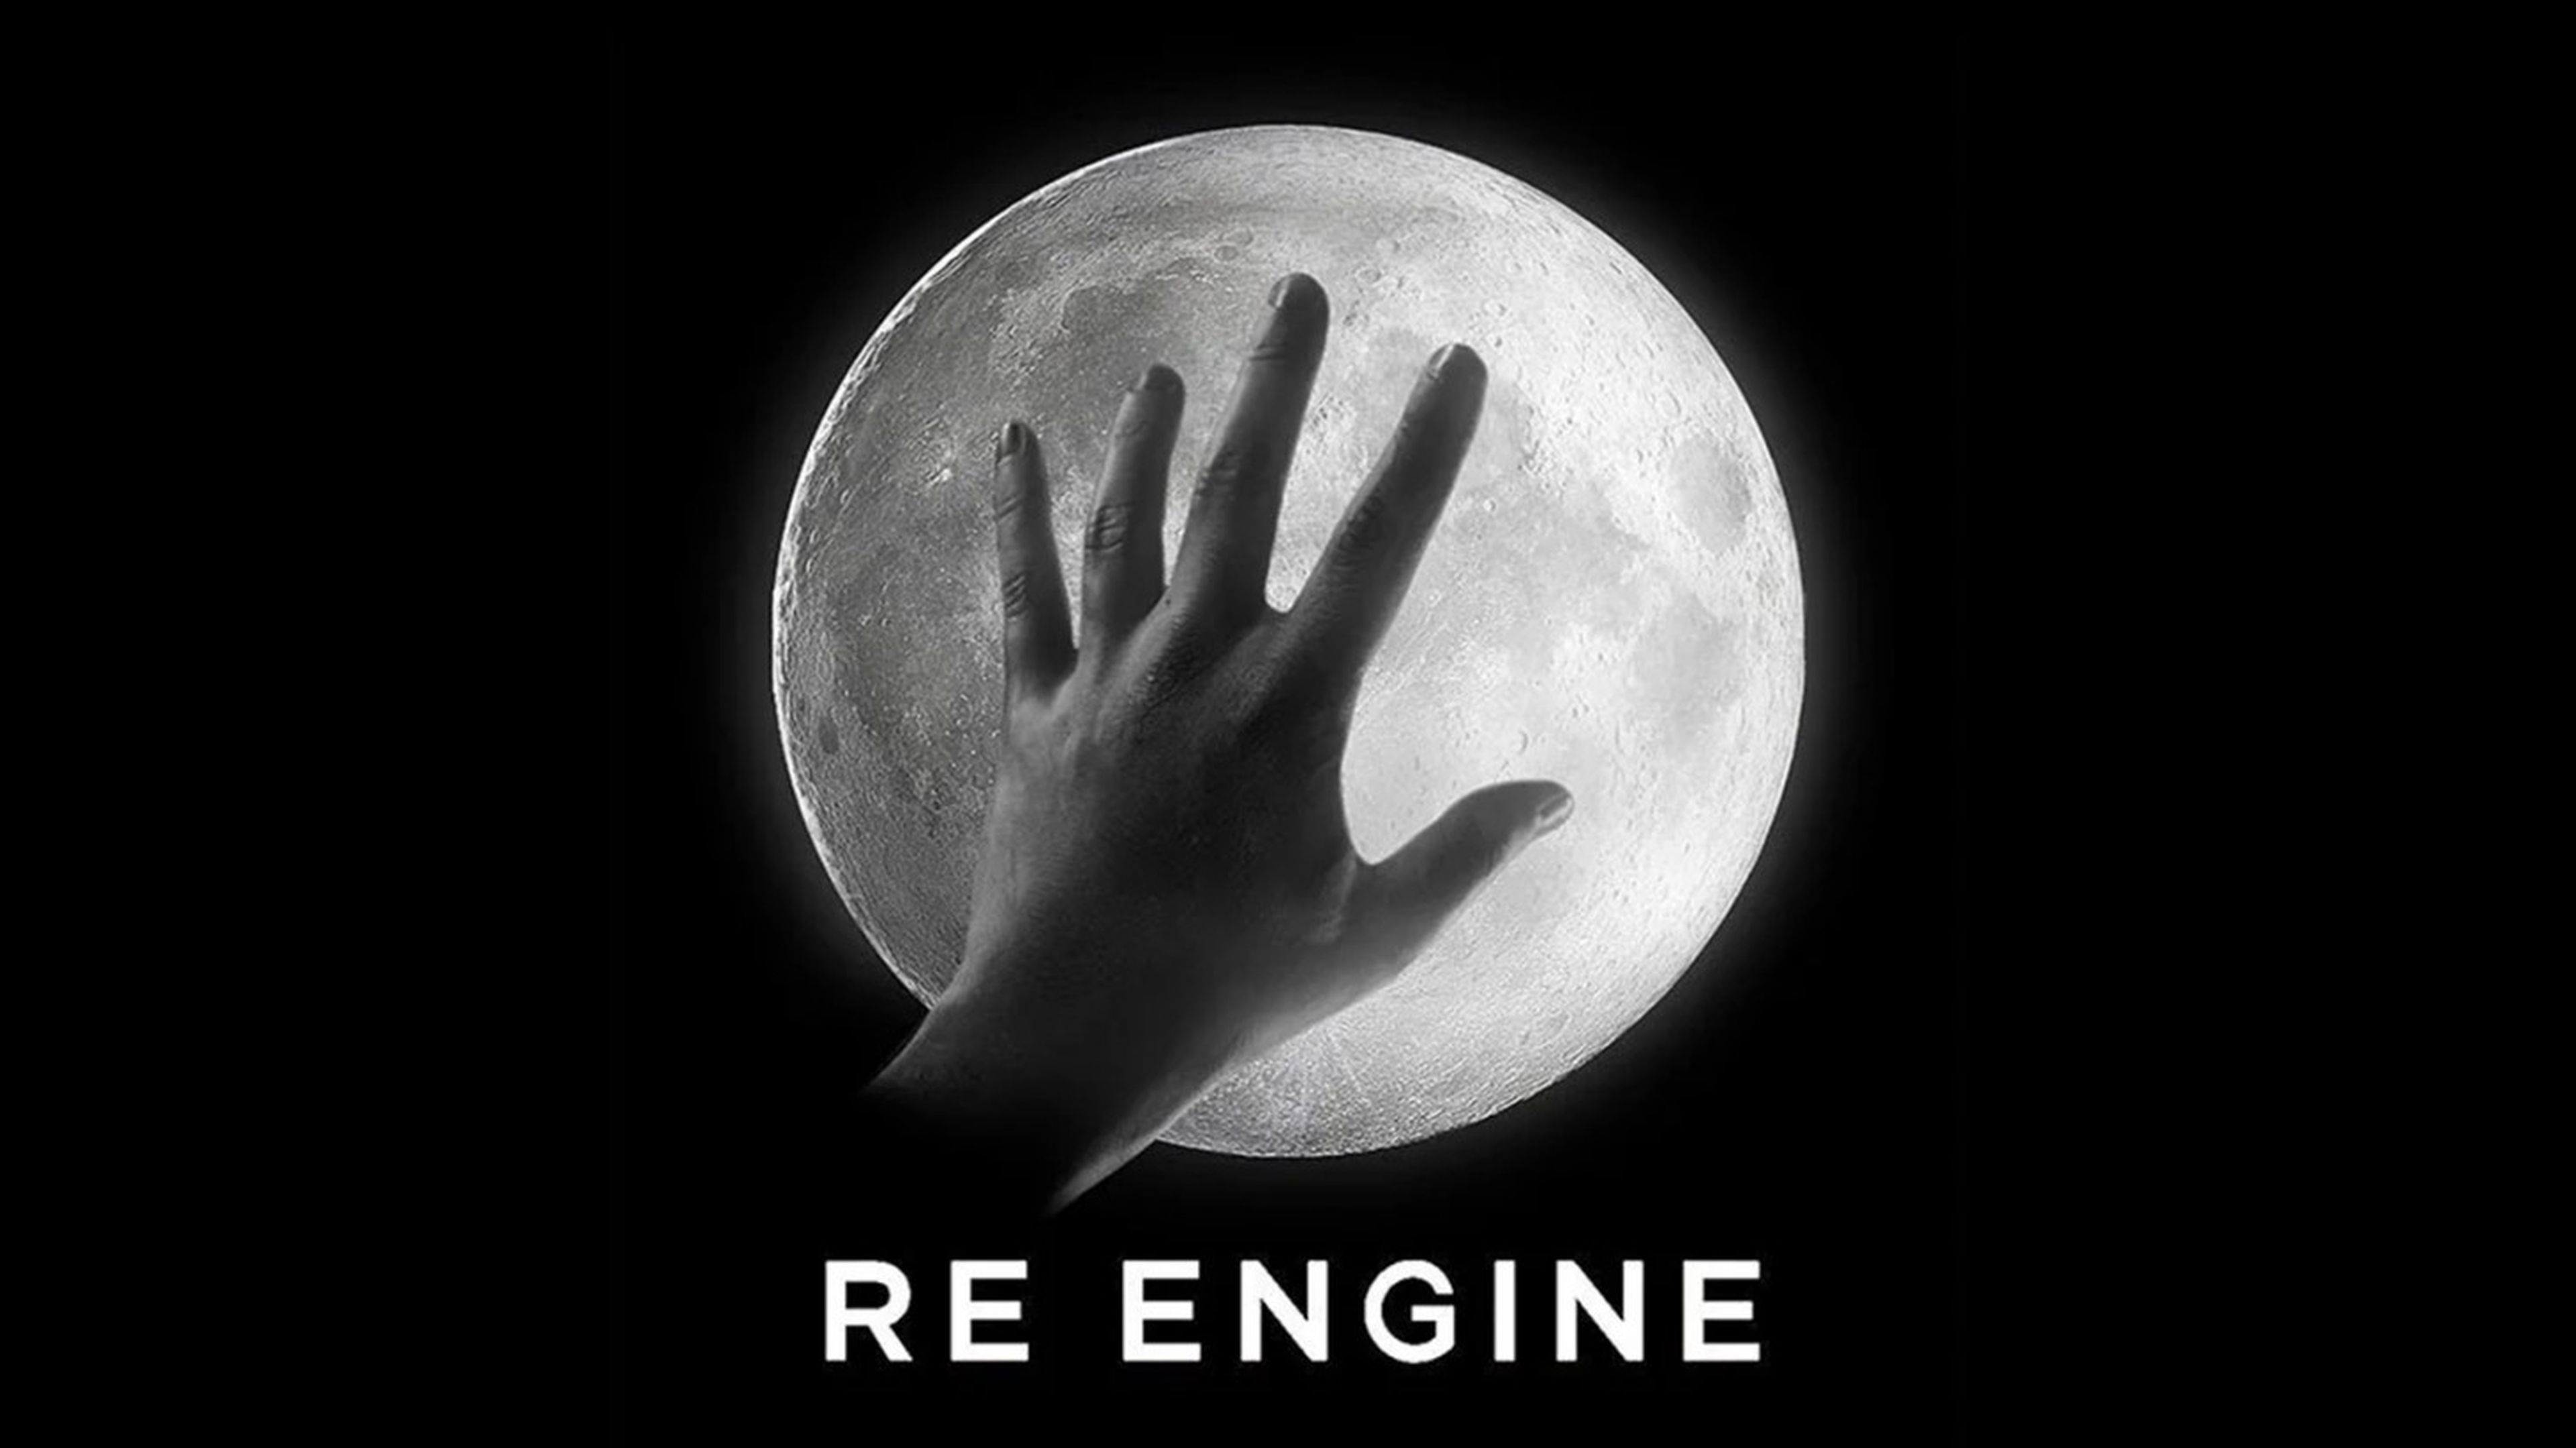 RE Engine